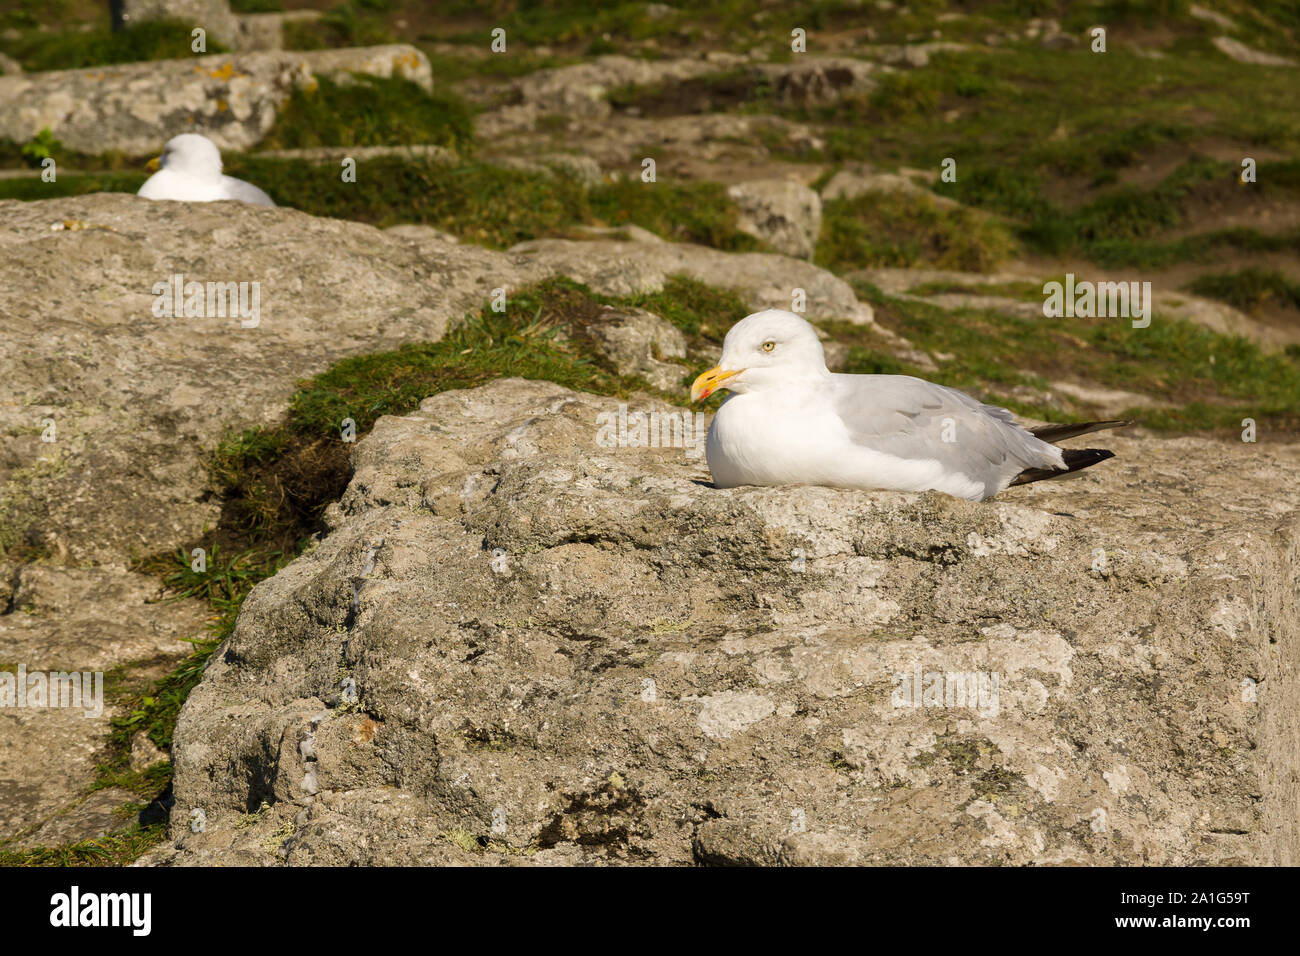 European herring gulls latin name Larus argentatus roosting among rocks at Mounts Bay in Cornwall Stock Photo